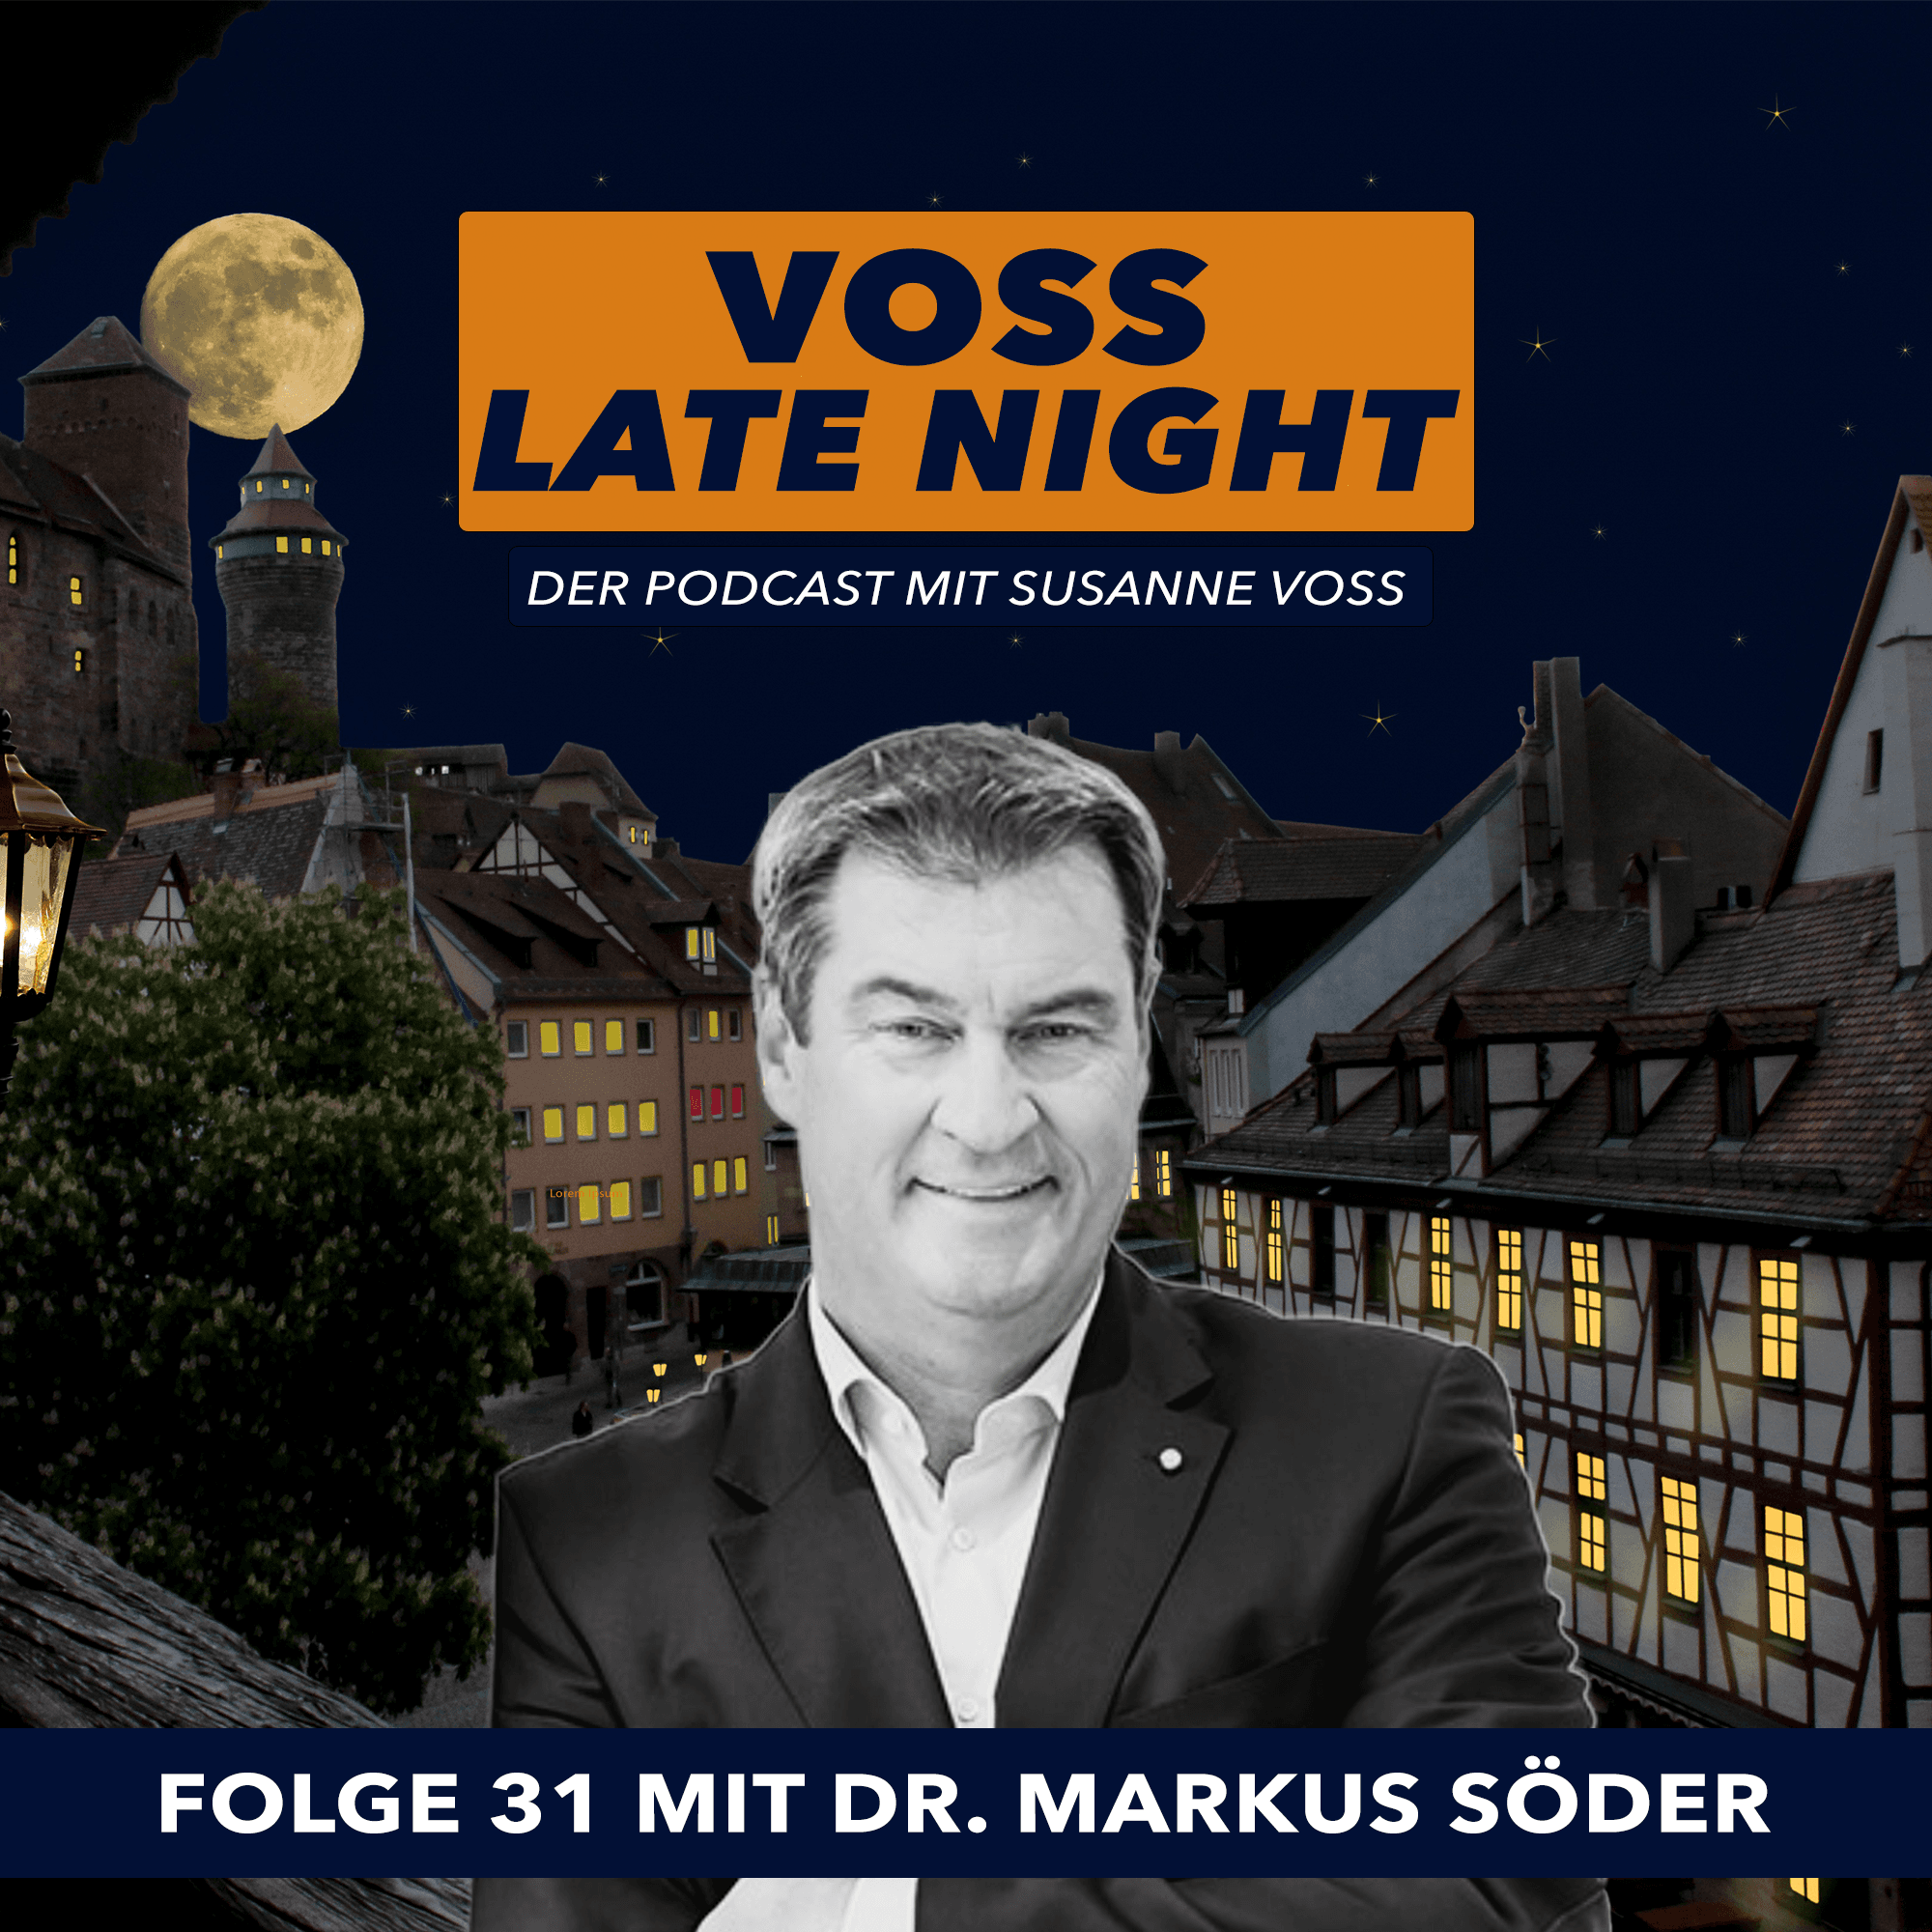 VOSS LATE NIGHT – Folge 31 mit dem bayerischen Ministerpräsidenten Dr. Markus Söder